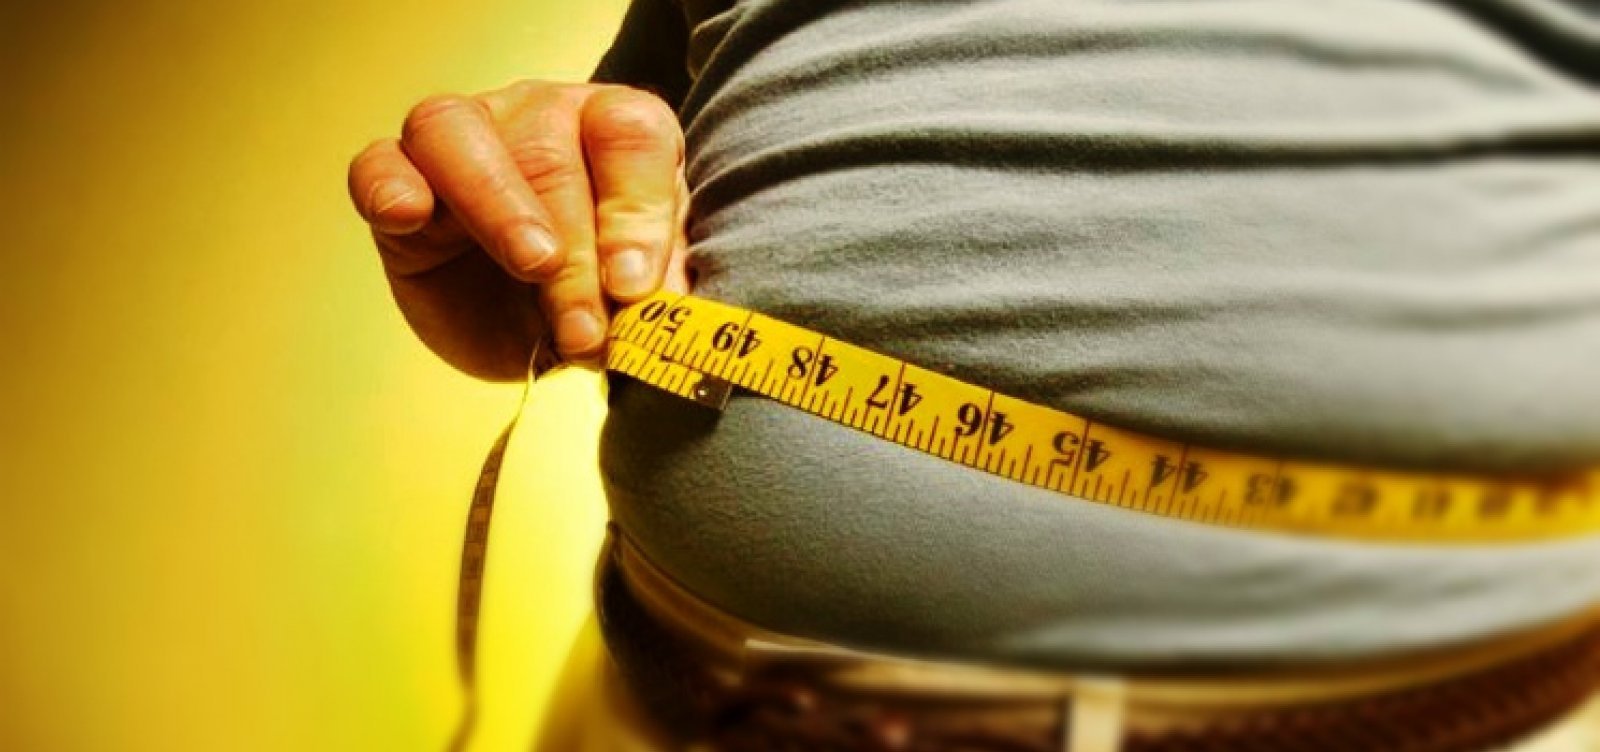 Obesidade deve atingir 30% da população no Brasil em 2030